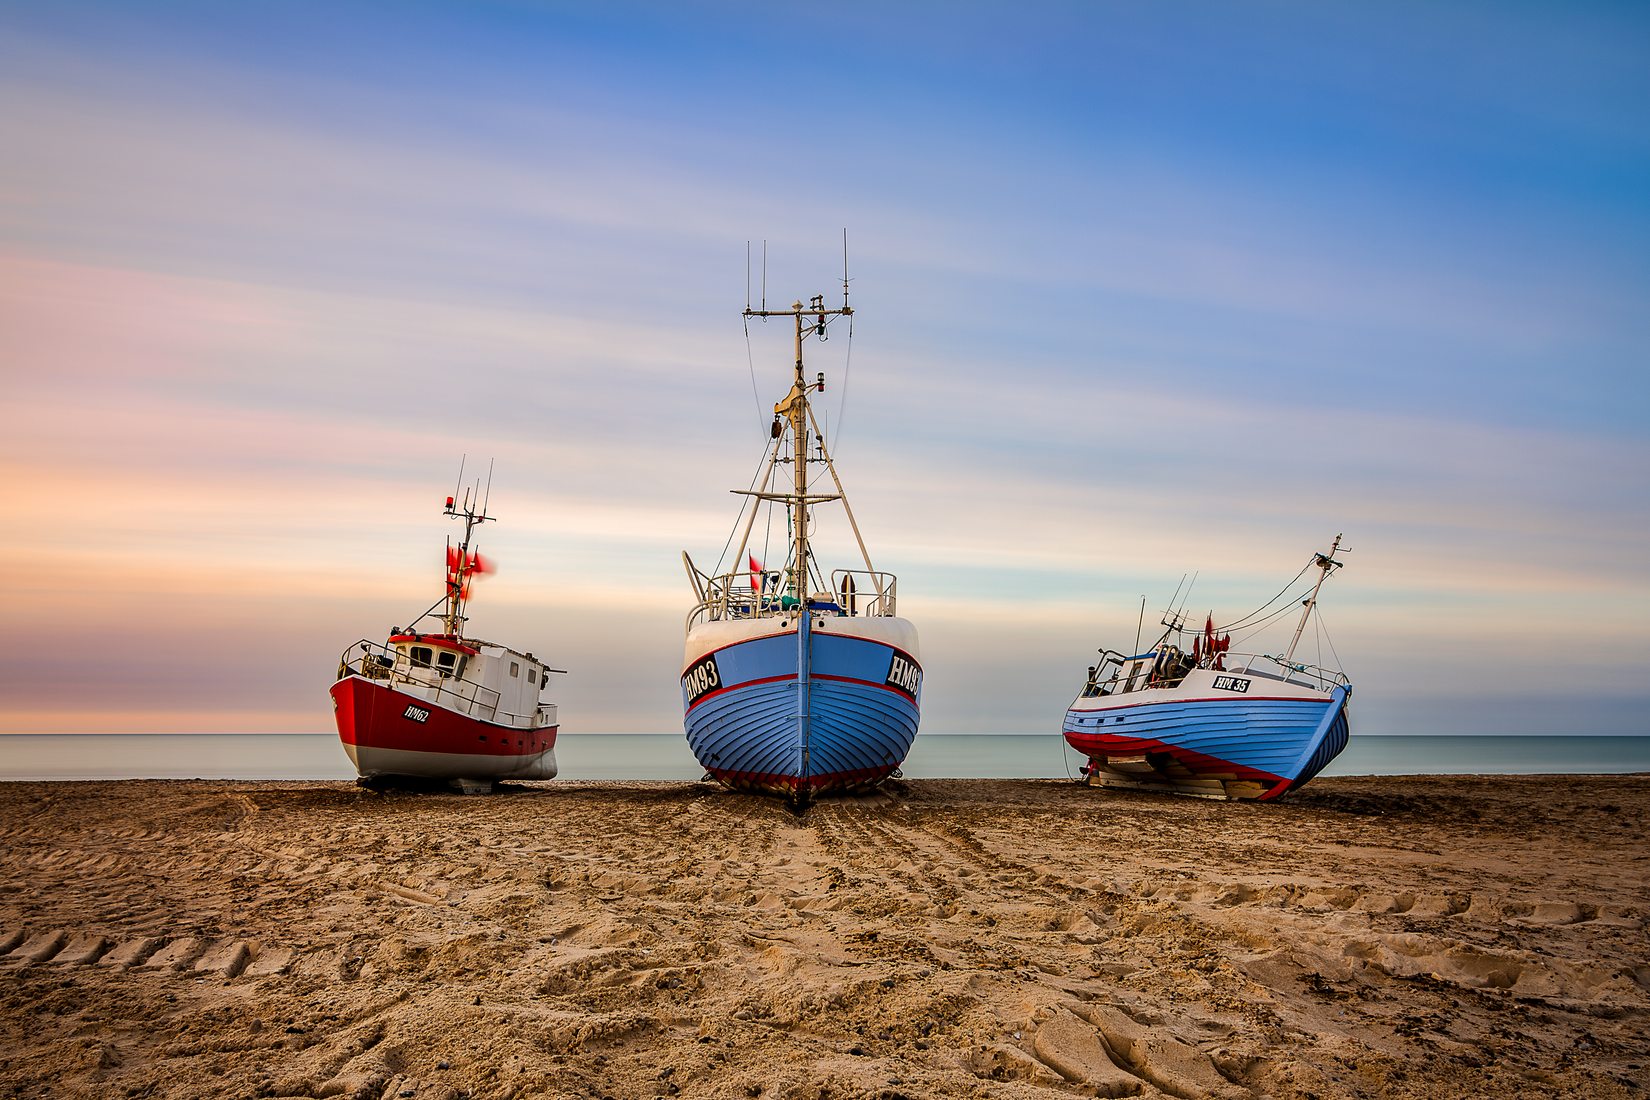 Tiny Fishing Boat - Sonderborg, Denmark Editorial Photography